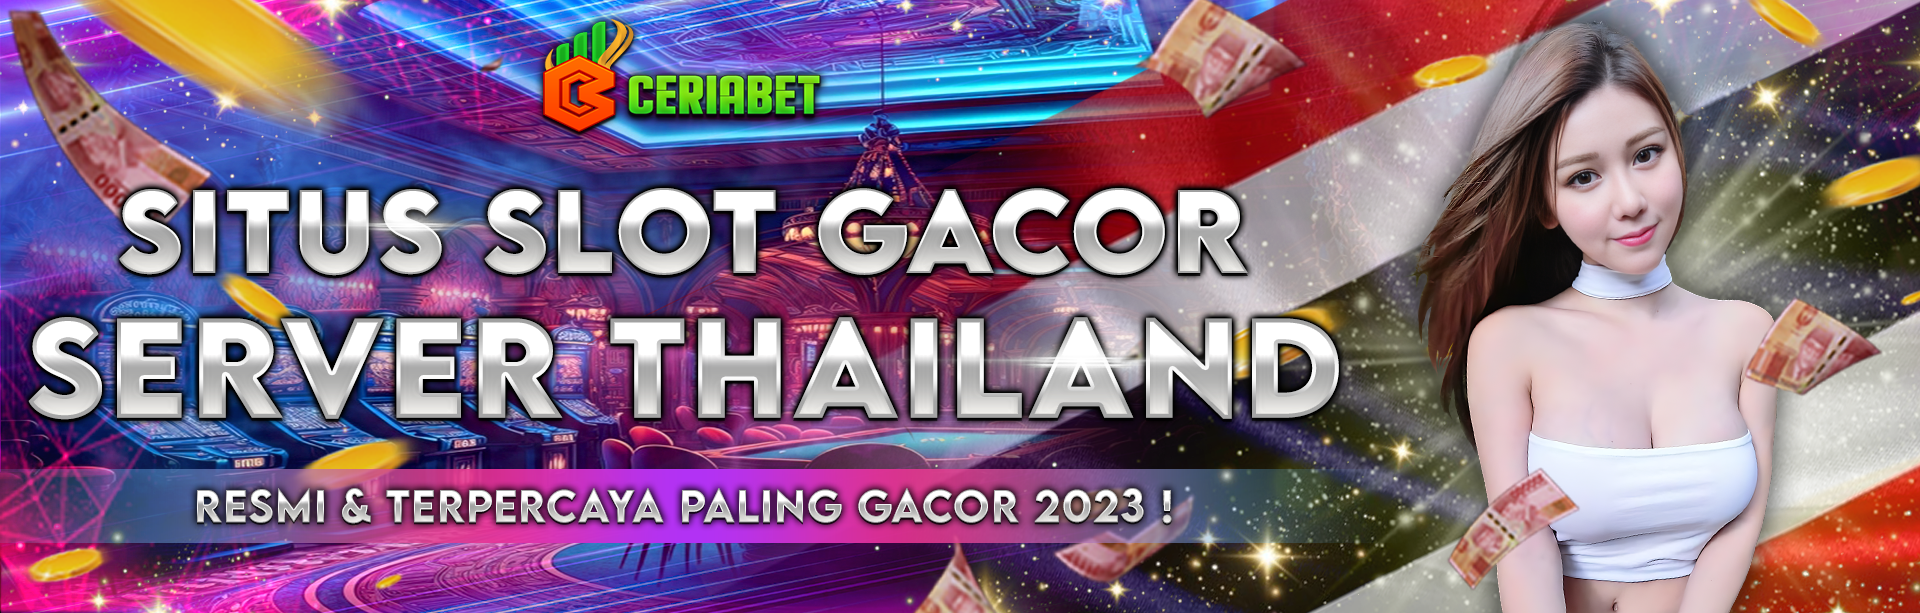 Slot Thailand 🍌 Daftar Link Slot Server Thailand Resmi  No 1 Super Gacor CERIABET